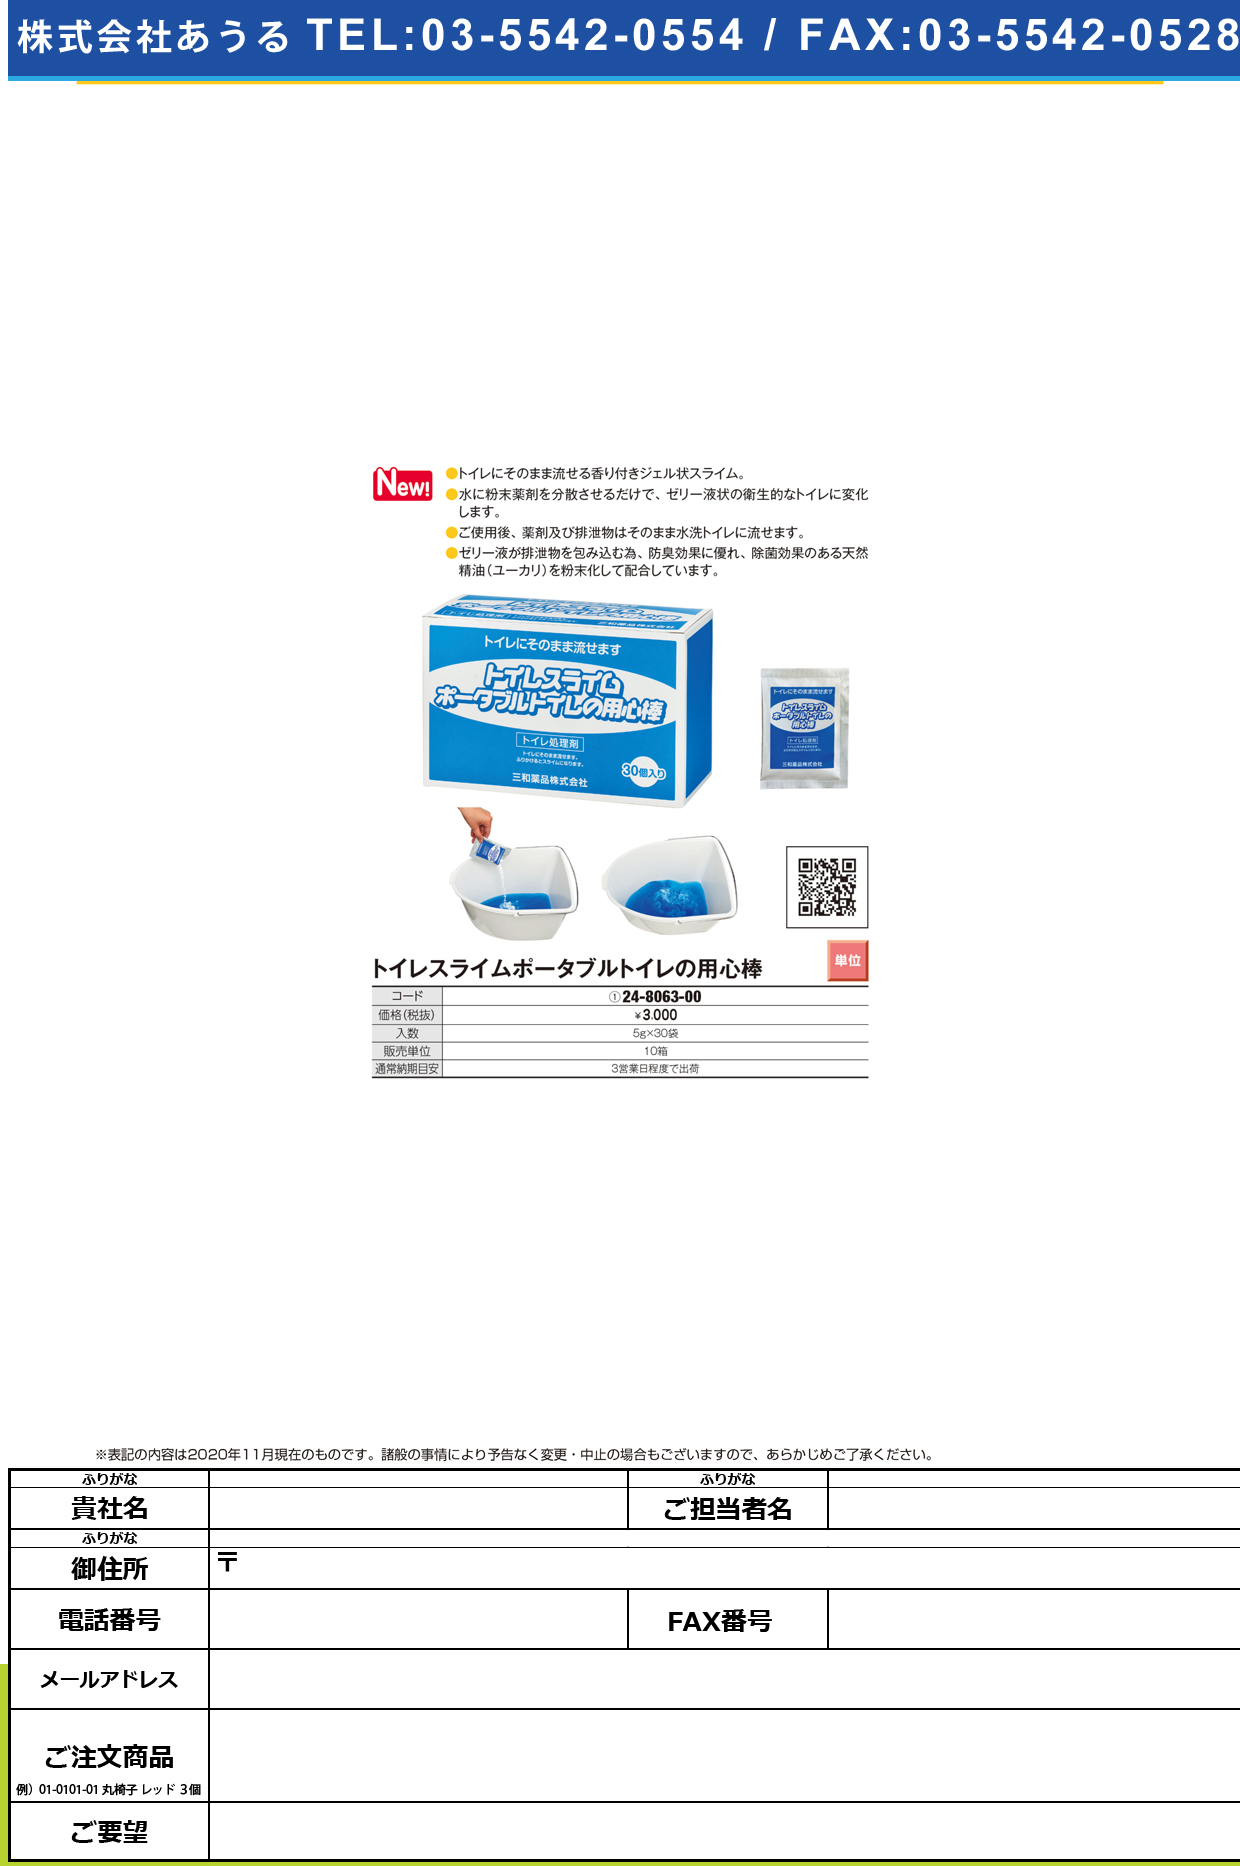 トイレ処理剤 トイレスライム 5GX30ホウイリ5GX30ﾎｳｲﾘ(24-8063-00)【三和薬品】(販売単位:10)